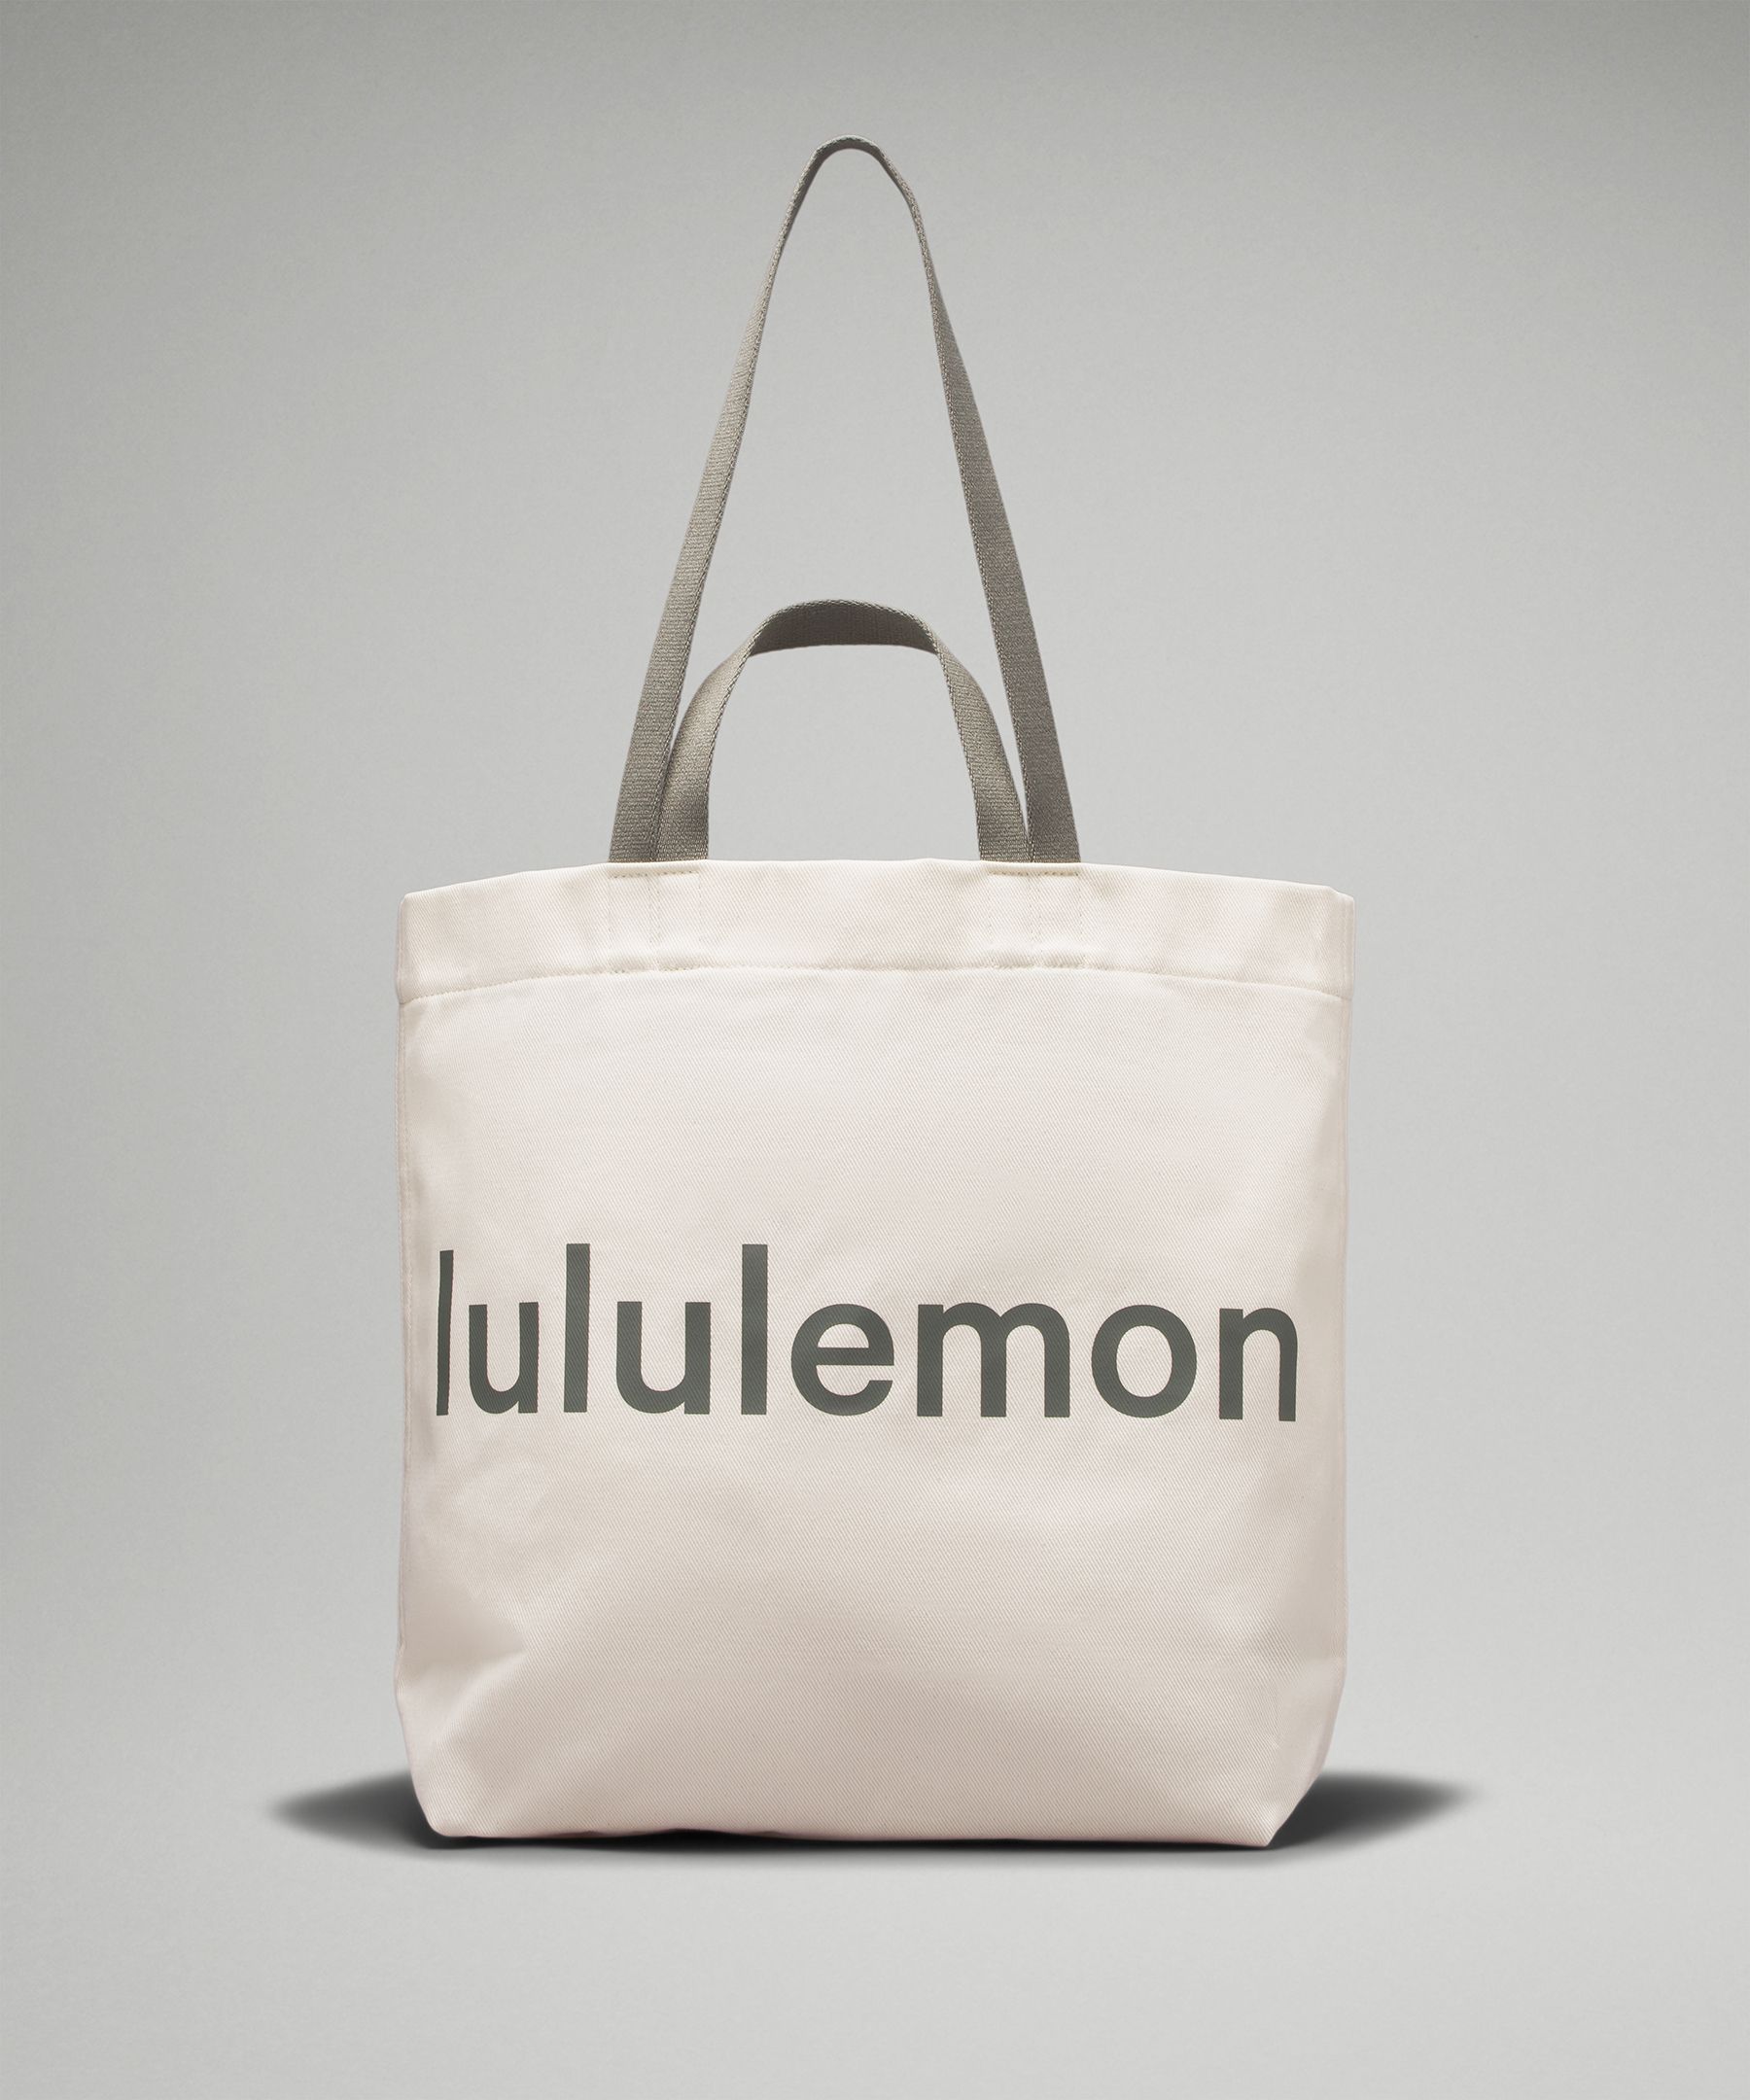 Lululemon Double-Handle Canvas Tote Bag 17L - Black/White/natural/black Cotton Fabric